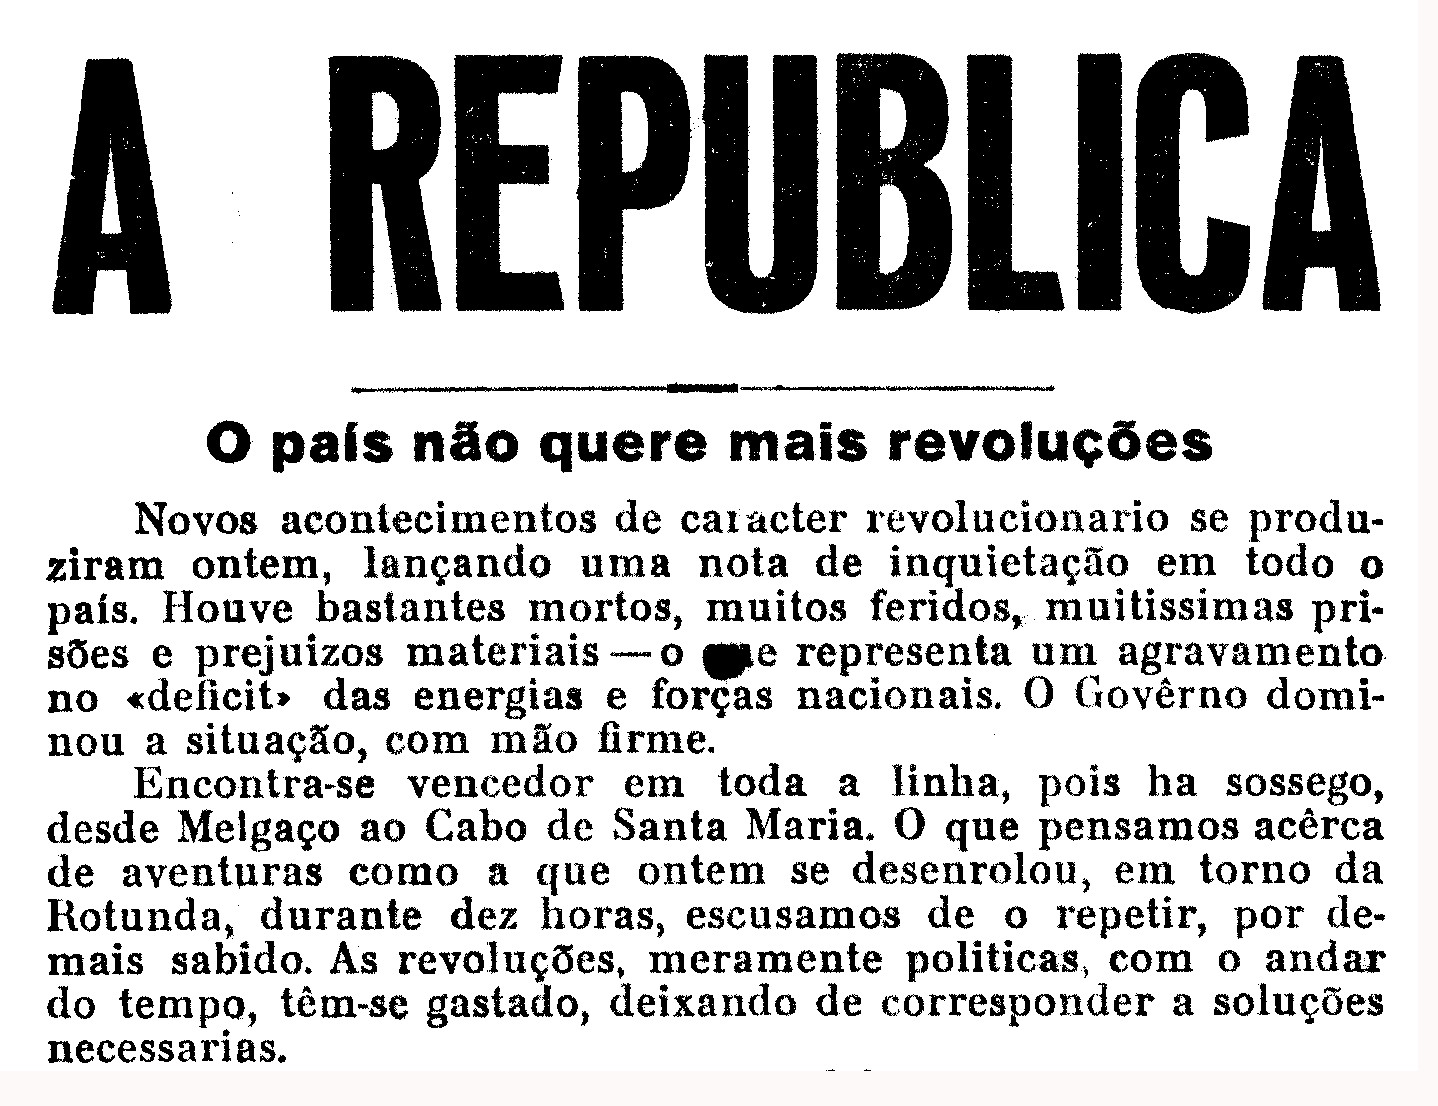 Excerto do editorial do "Diário de Lisboa" de 27-08-1931